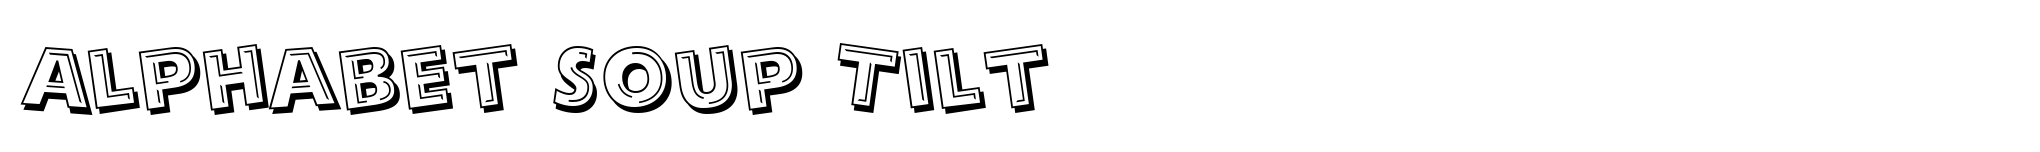 Alphabet Soup Tilt image